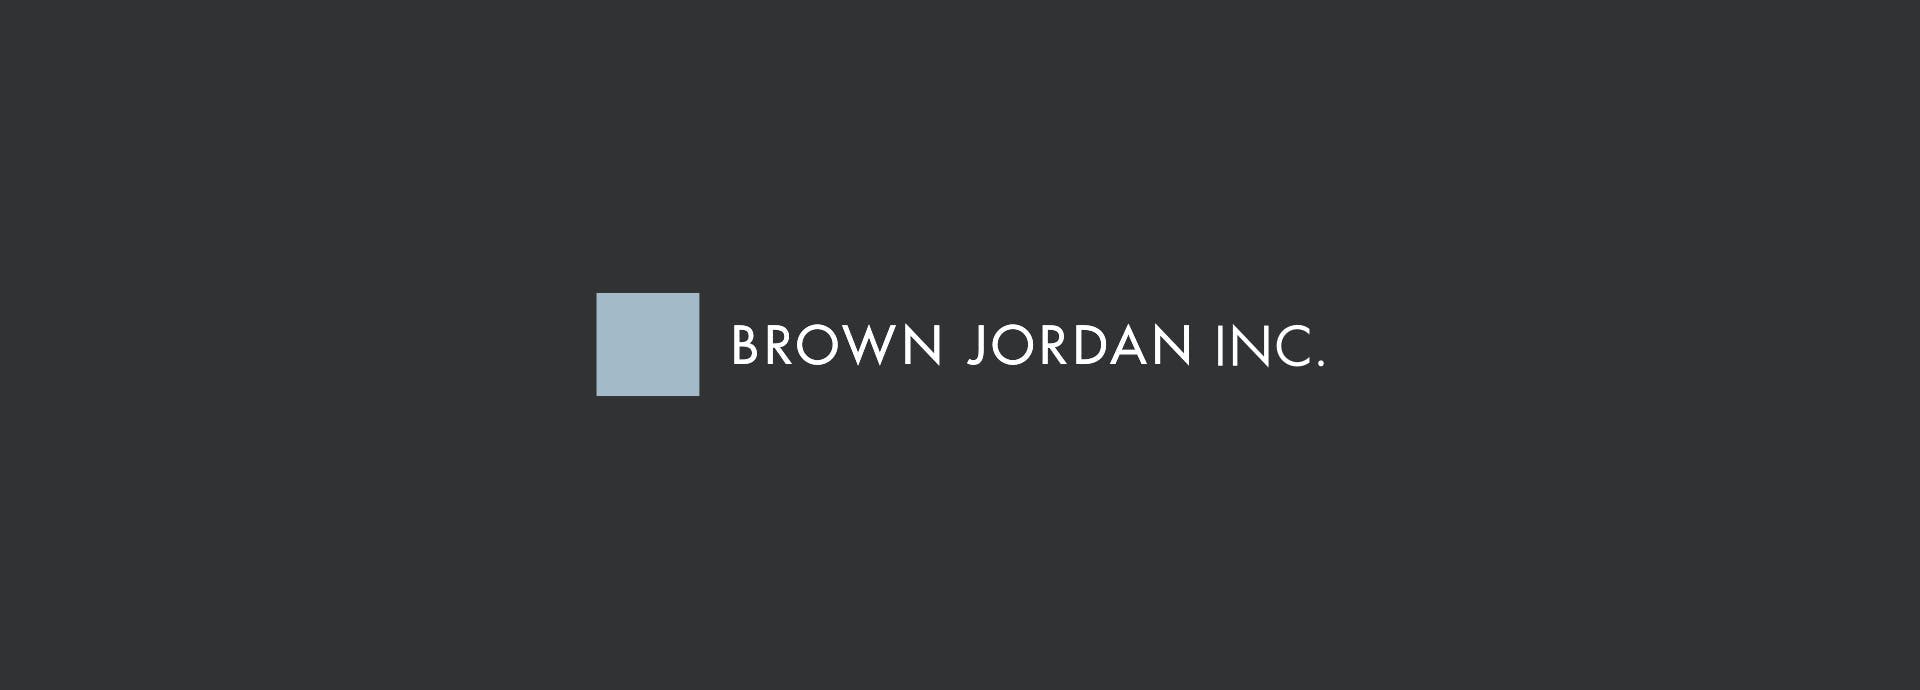 logo of brown jordan inc